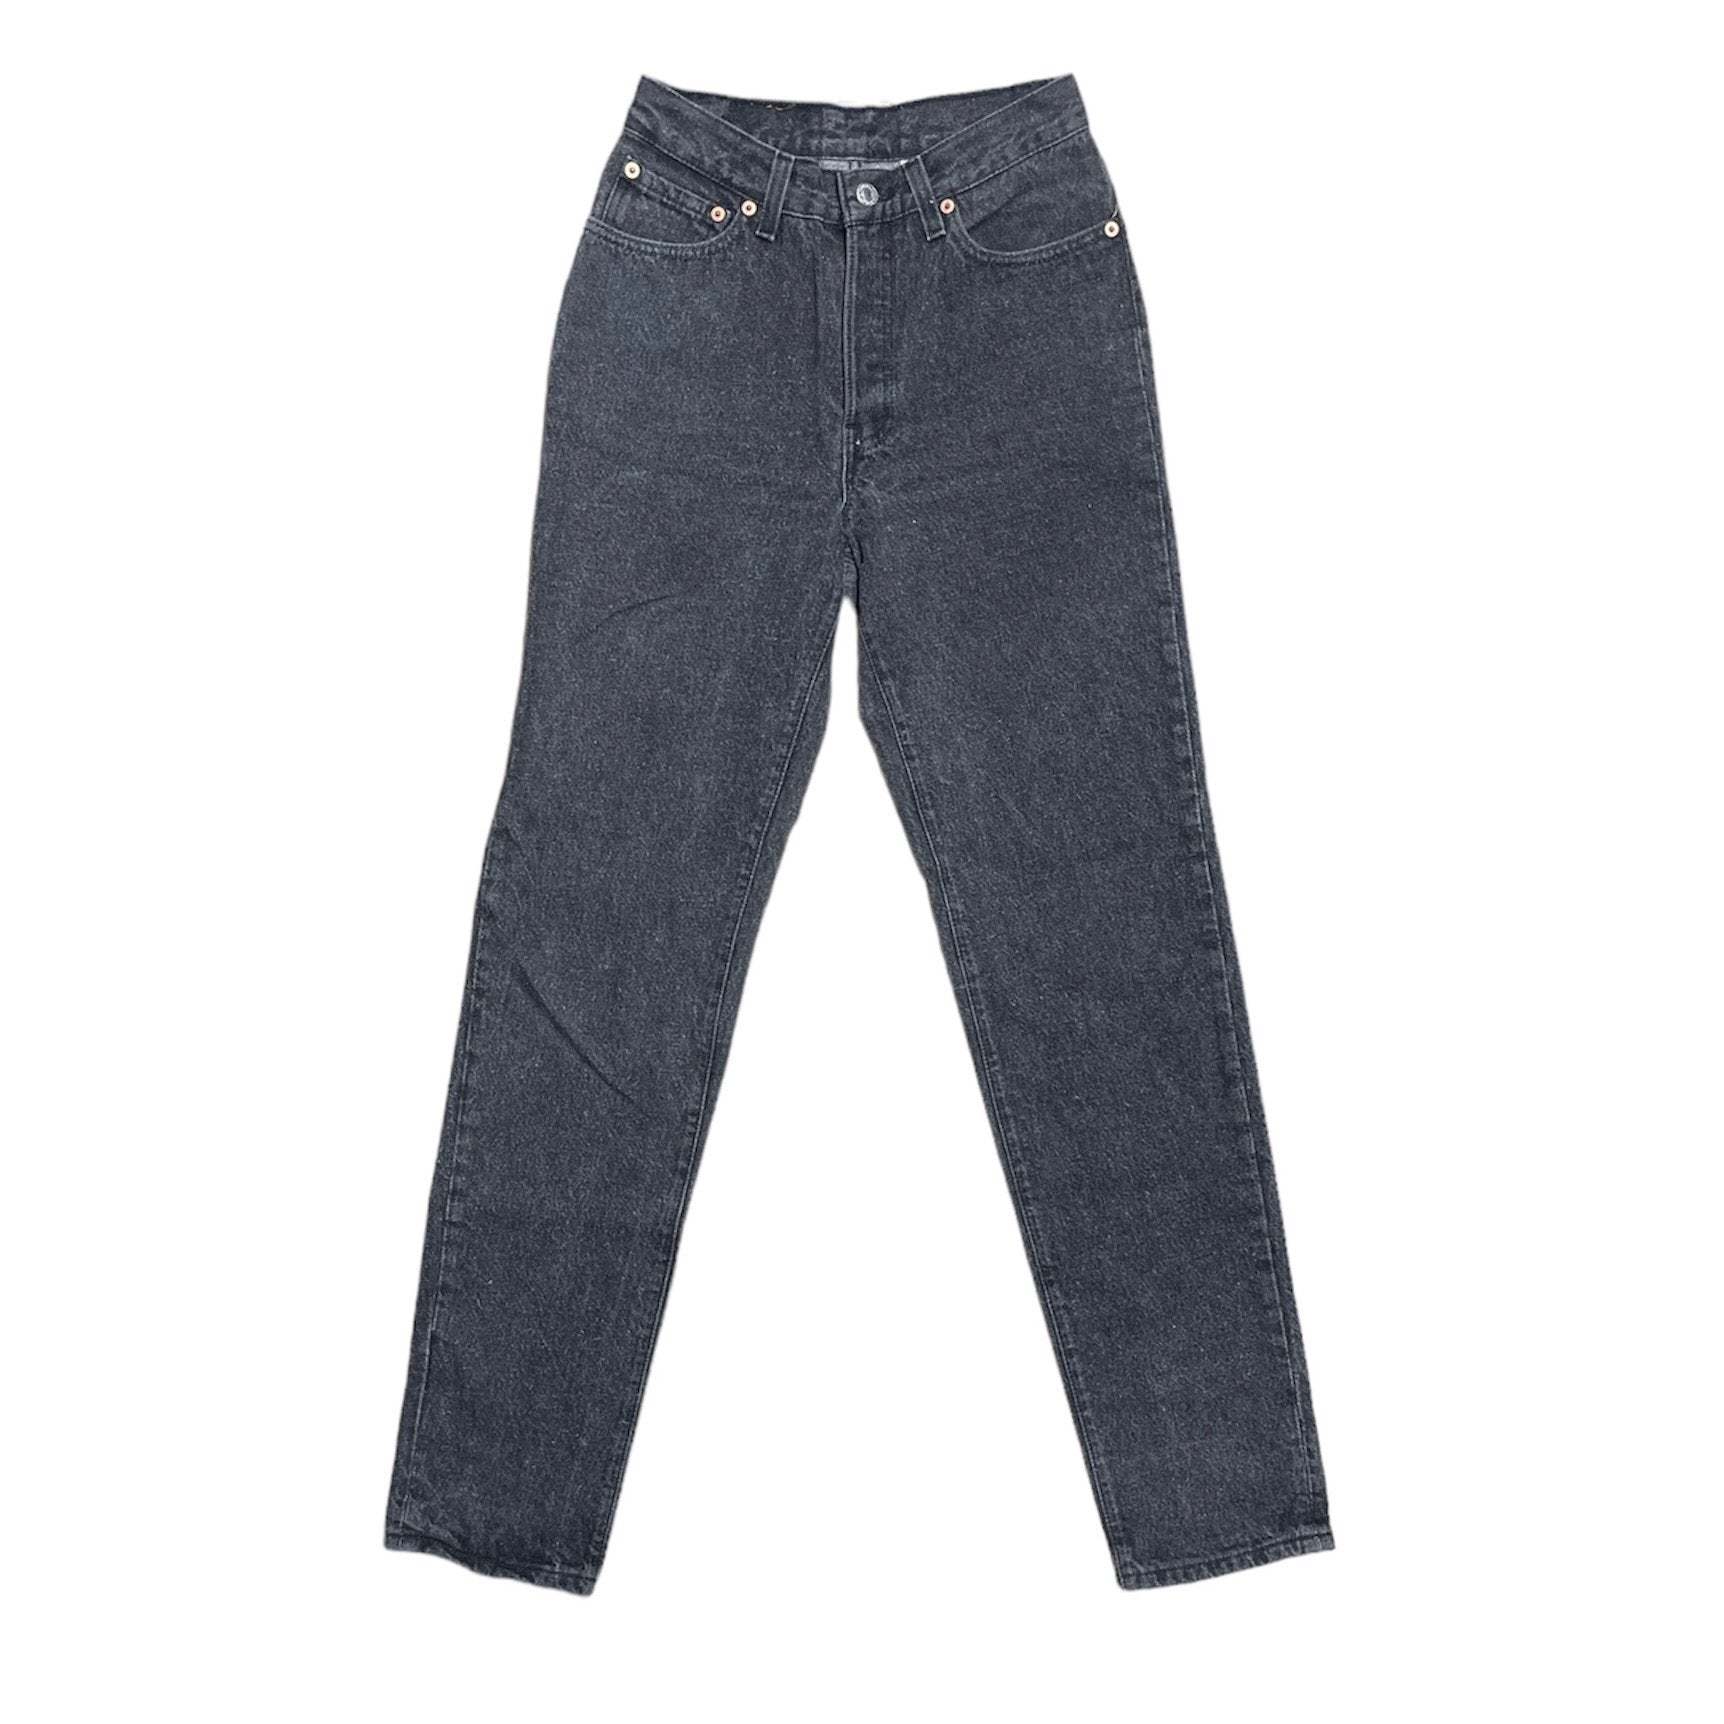 Vintage Levis Grey Jeans (W27/L32)